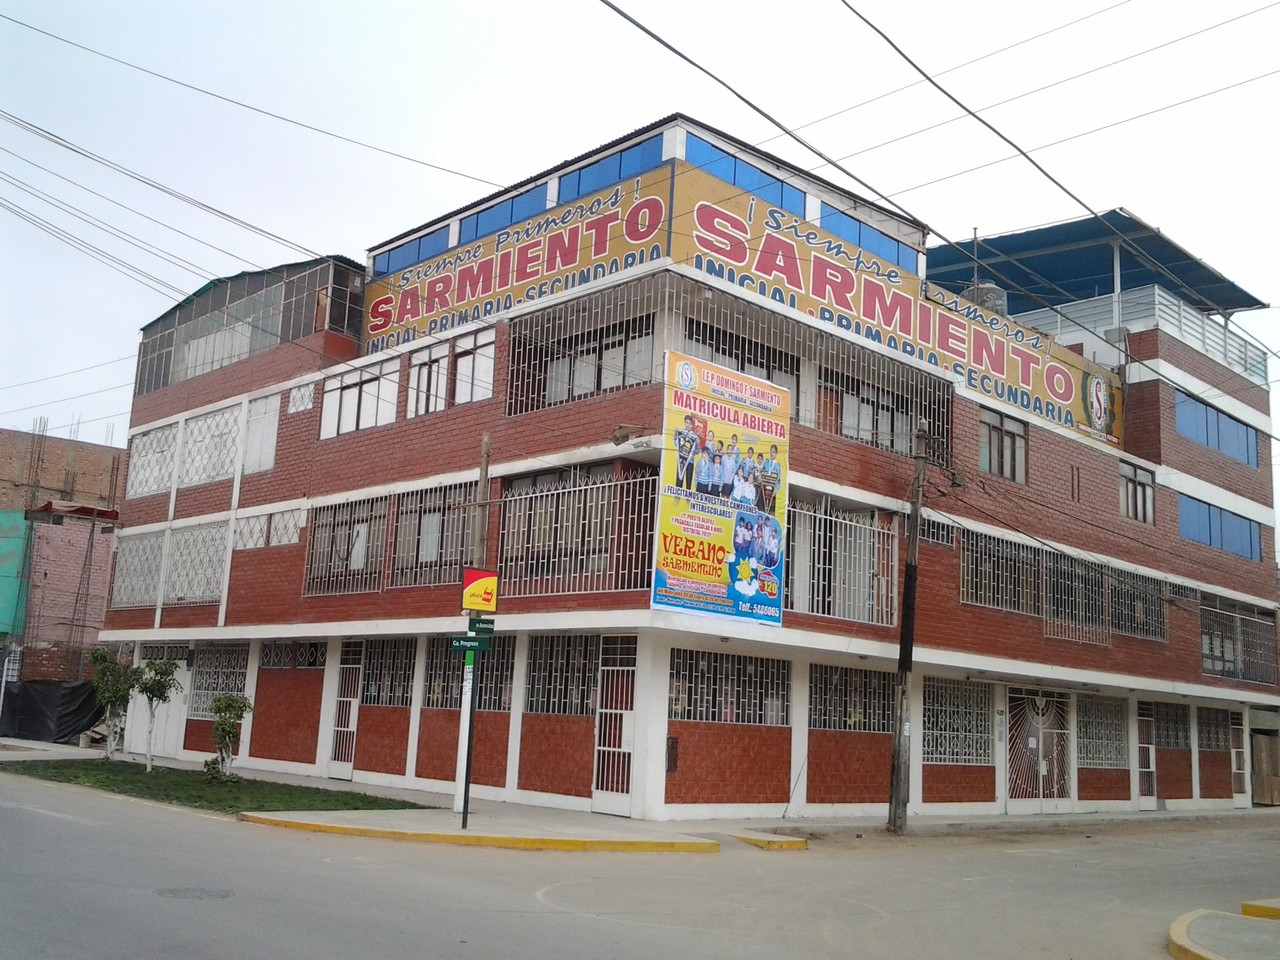 El proyecto Educativo Sarmentino, ubicado en el distrito de Puente Piedra-